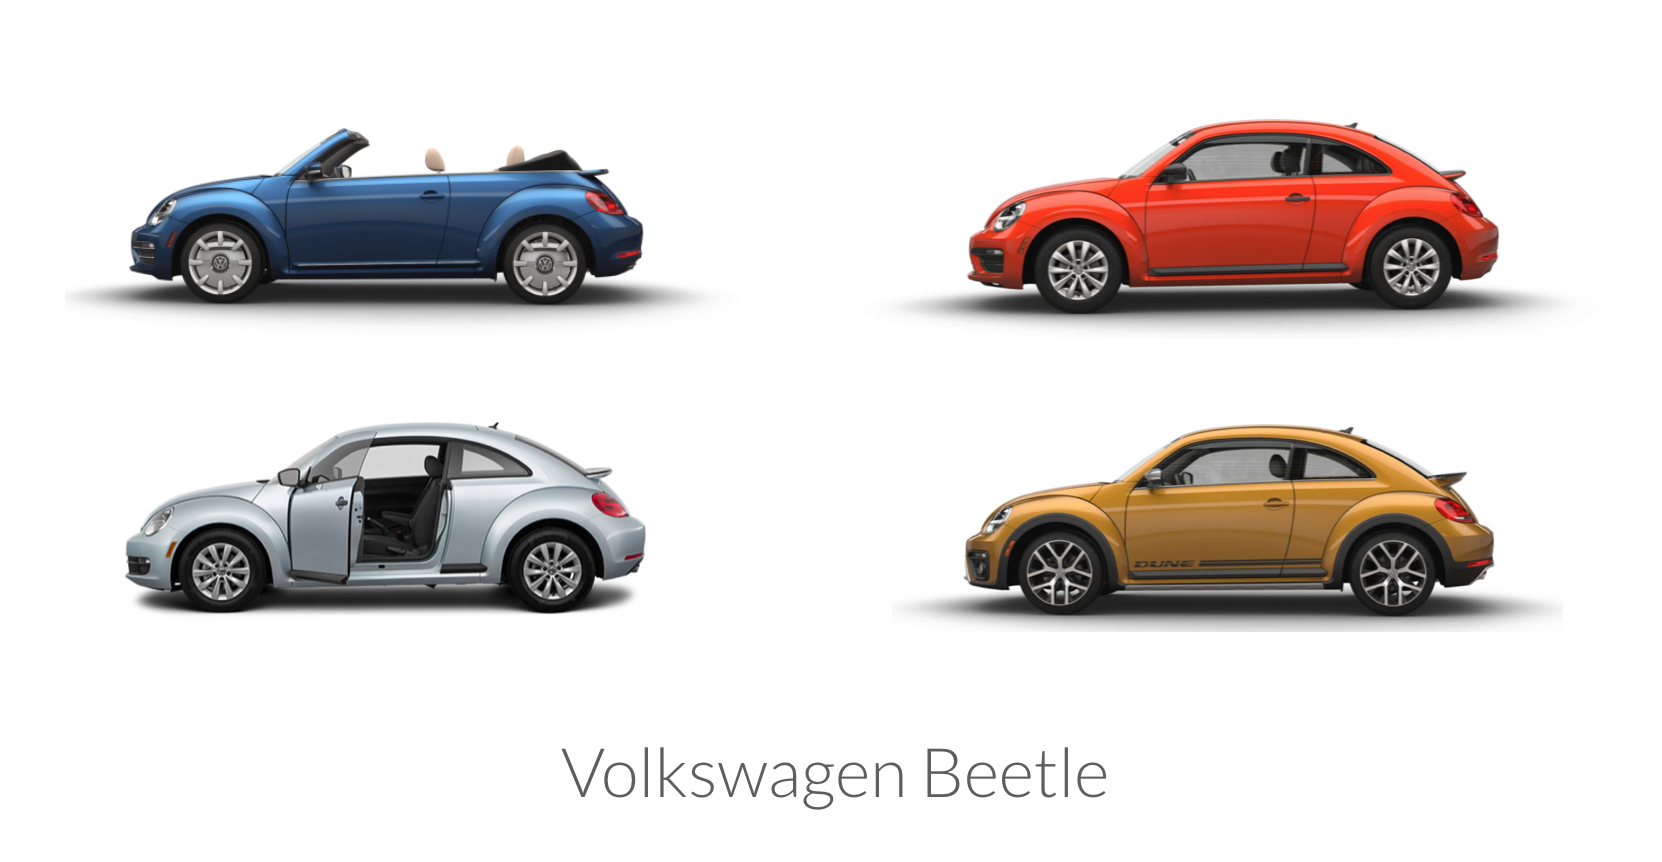 Example of the Volkswagen beetle modular design